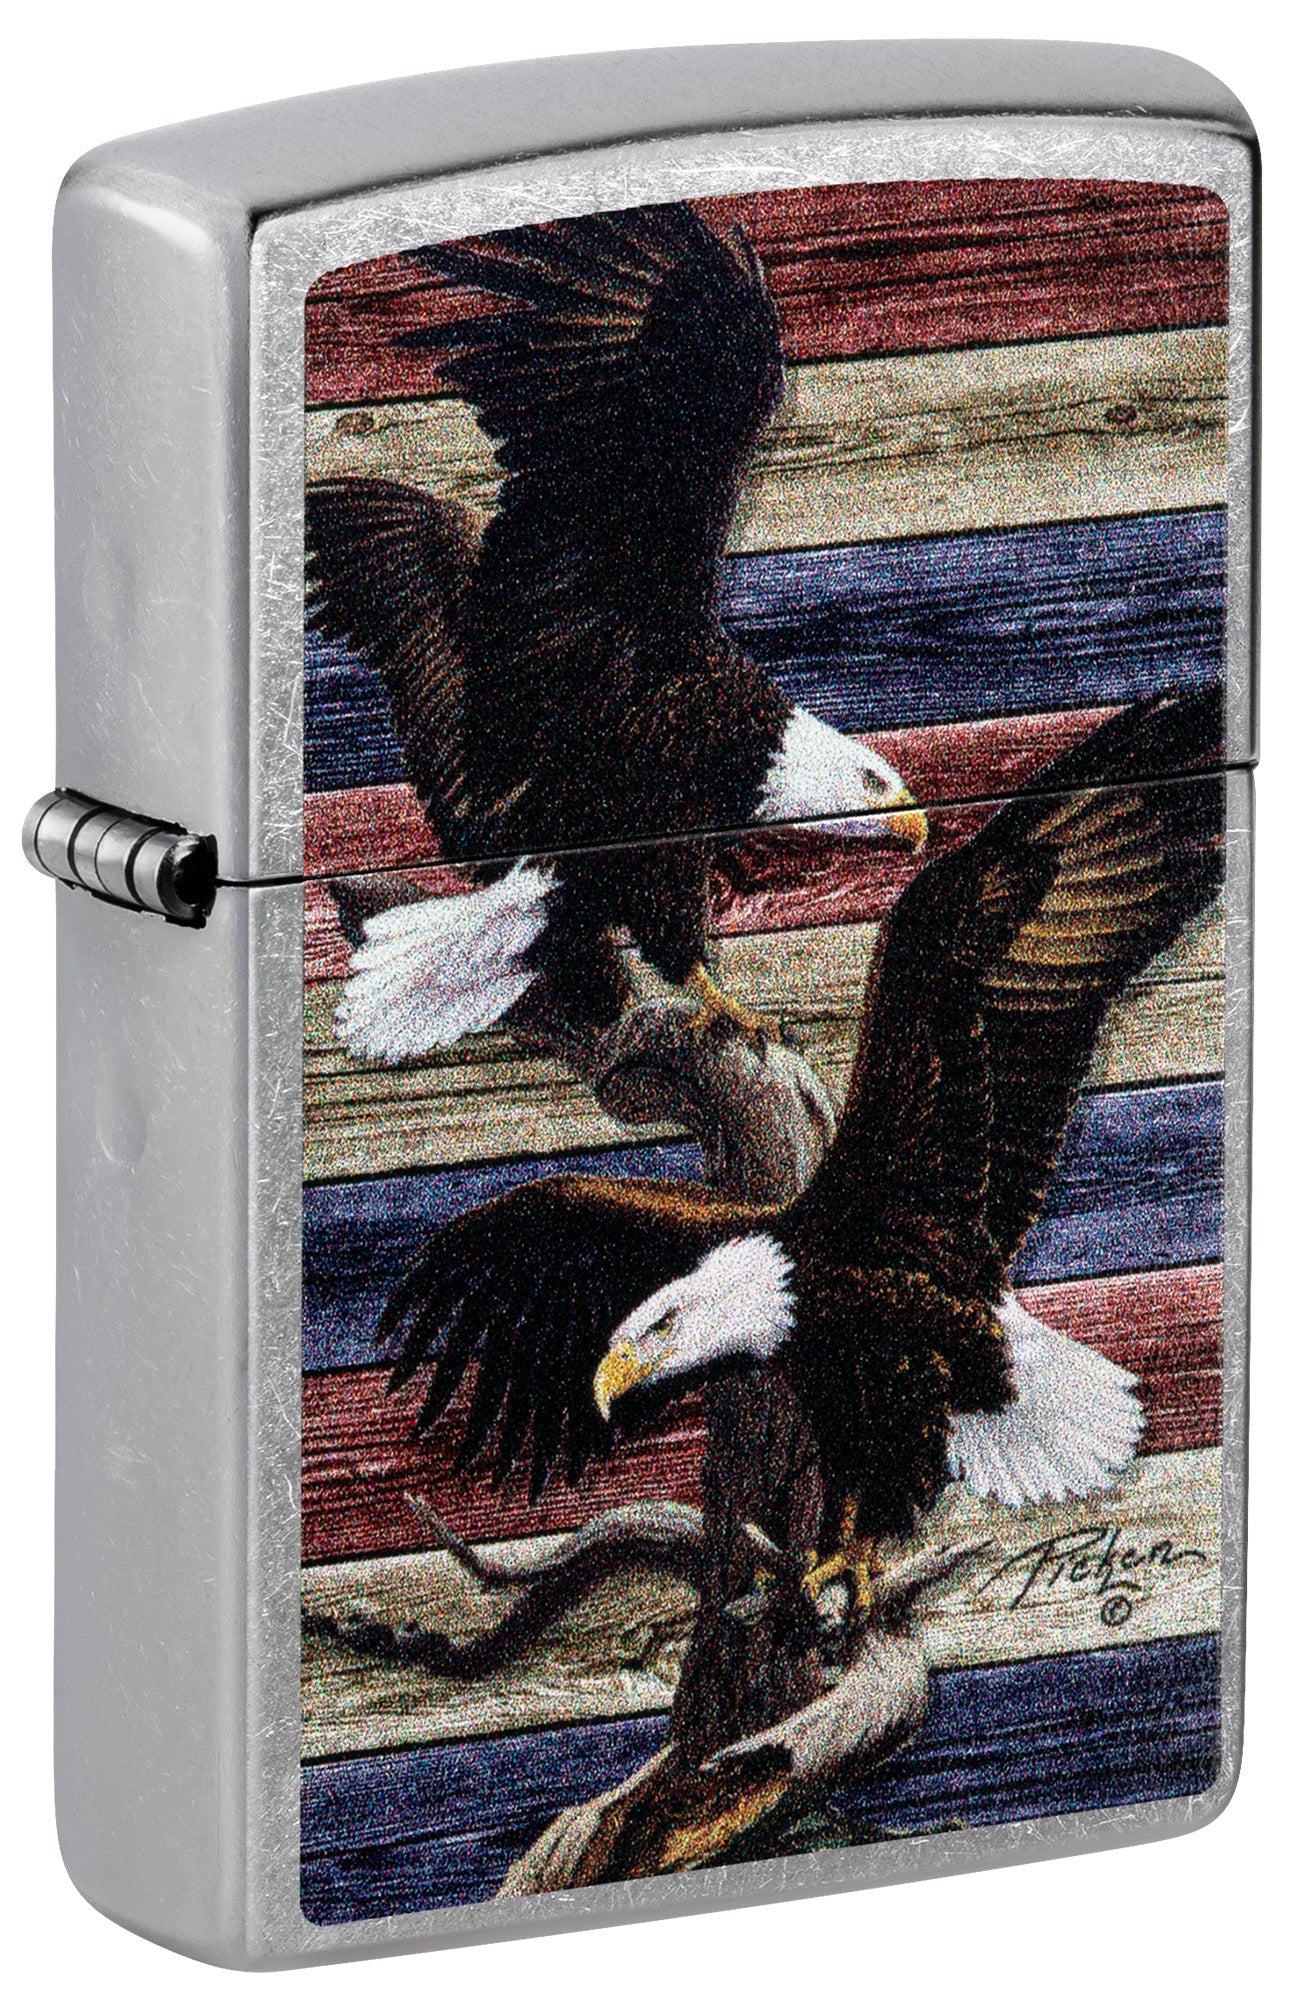 Zippo Lighter: Bald Eagles by Linda Picken - Street Chrome 81522